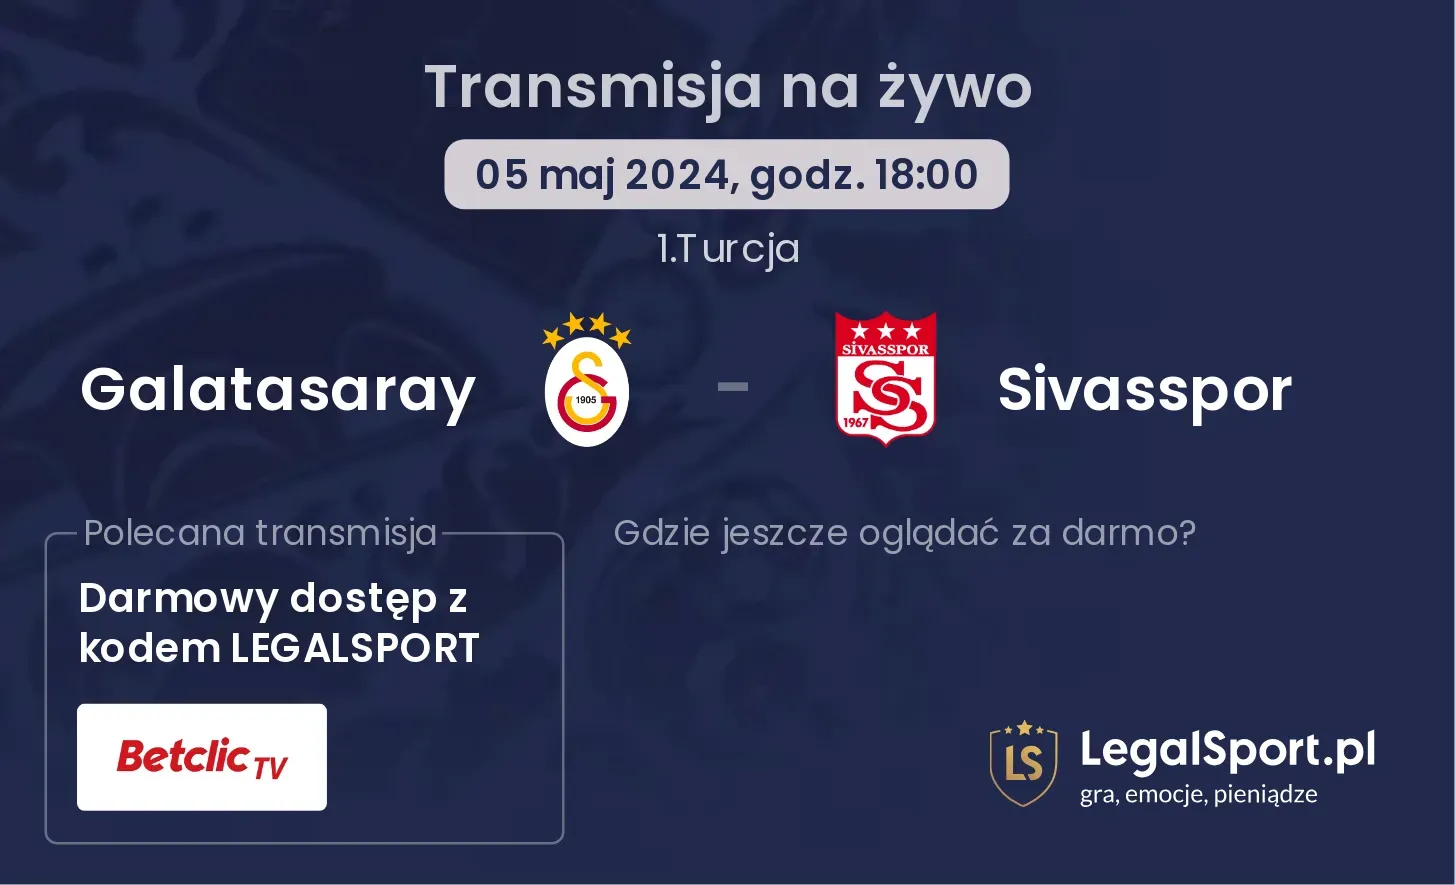 Galatasaray - Sivasspor transmisja na żywo